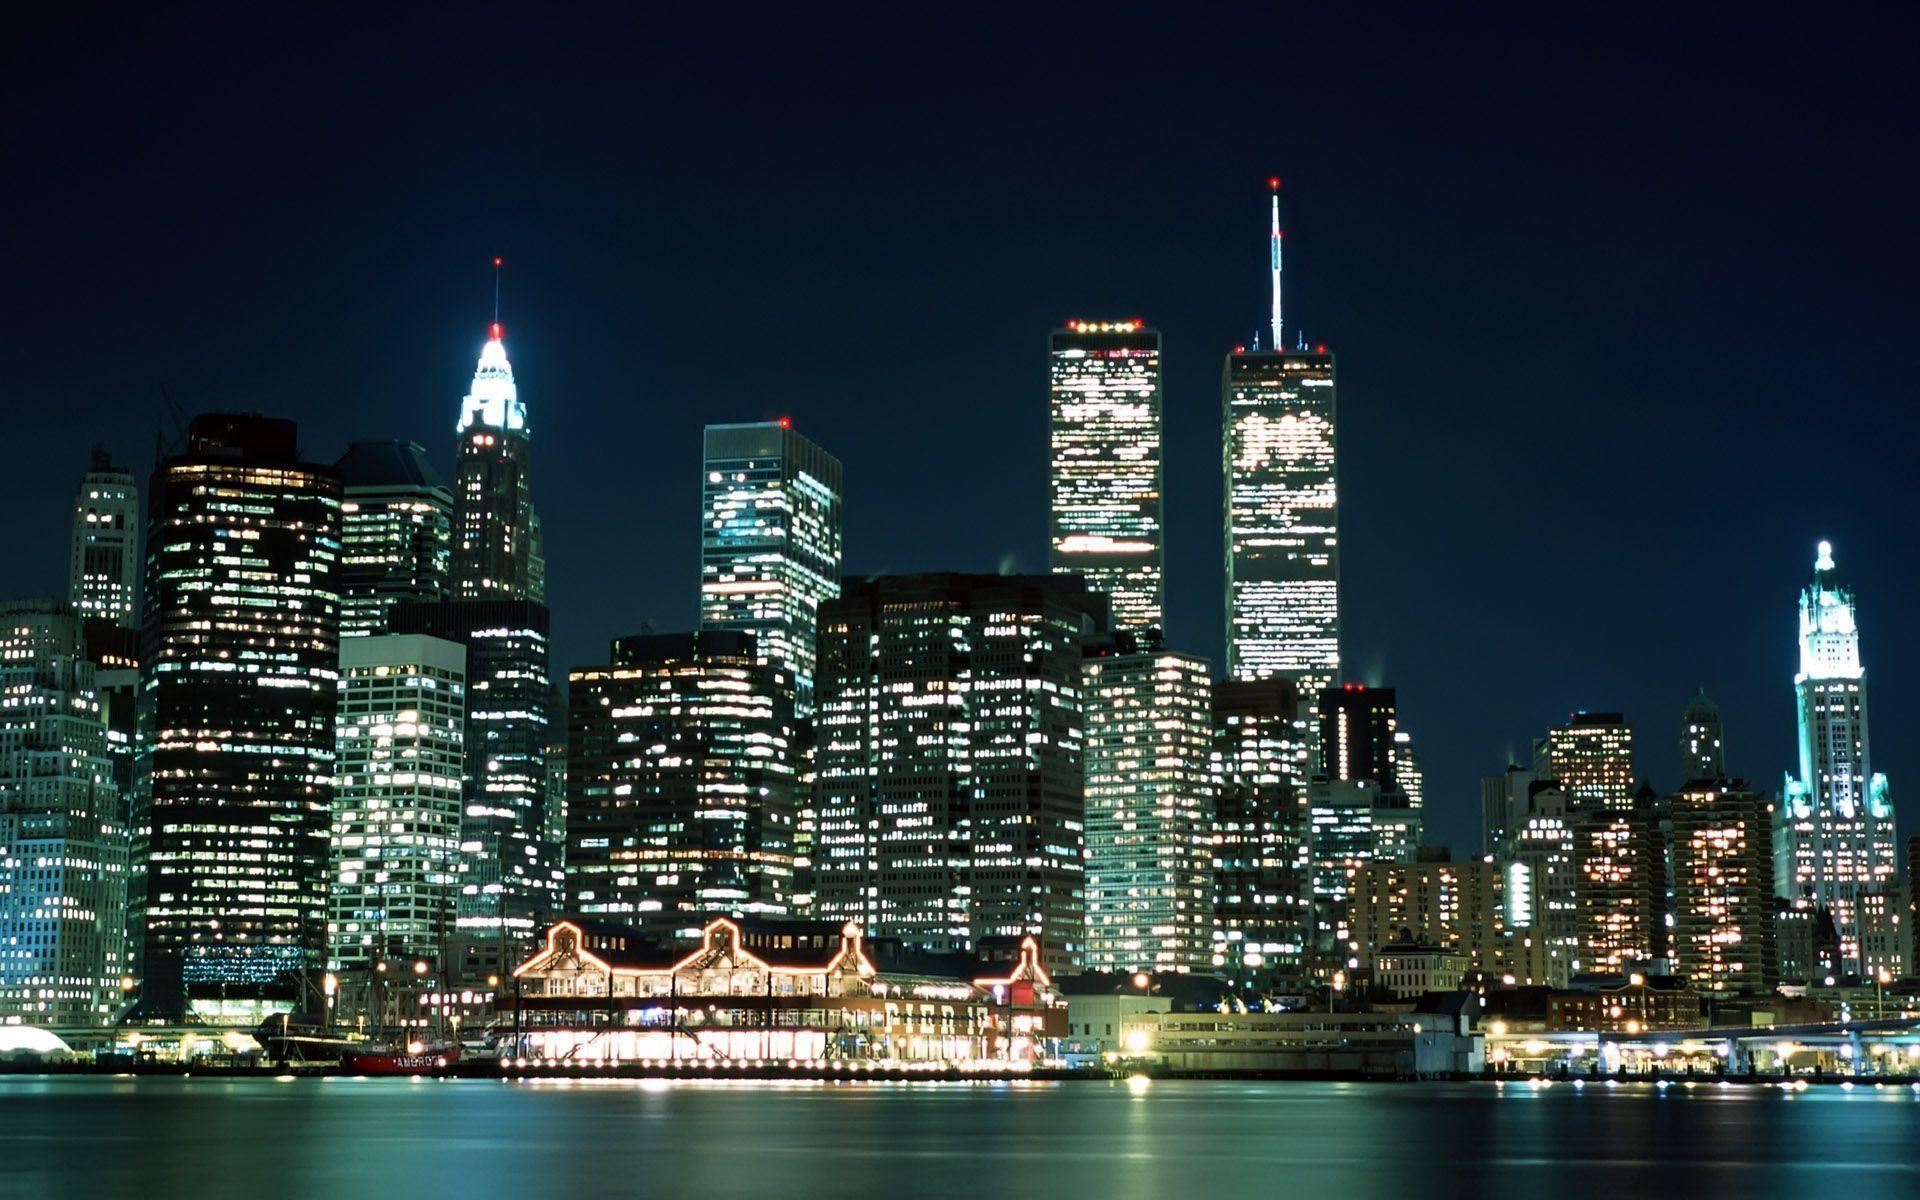 City lights / New York / USA wallpaper and image